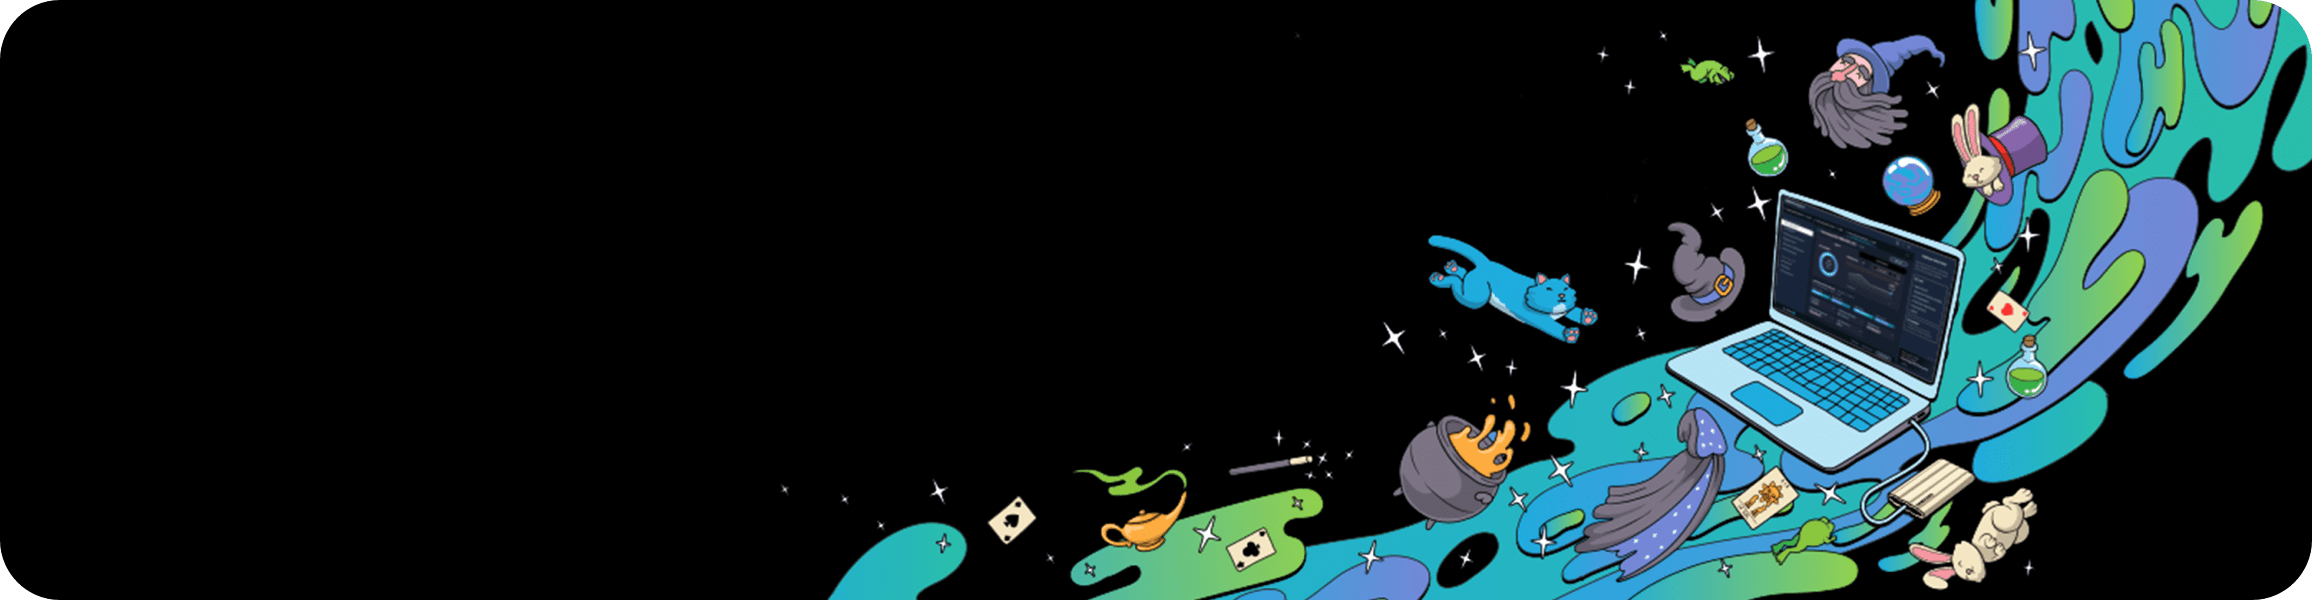 一张插图，内容包括三星Galaxy笔记本电脑、水晶球、白兔、绿色药水、大胡子巫师的头、蓝猫、女巫的帽子、坩埚和青蛙，用于说明三星Magician 8.1软件。该软件可支持内置和便携式SSD。